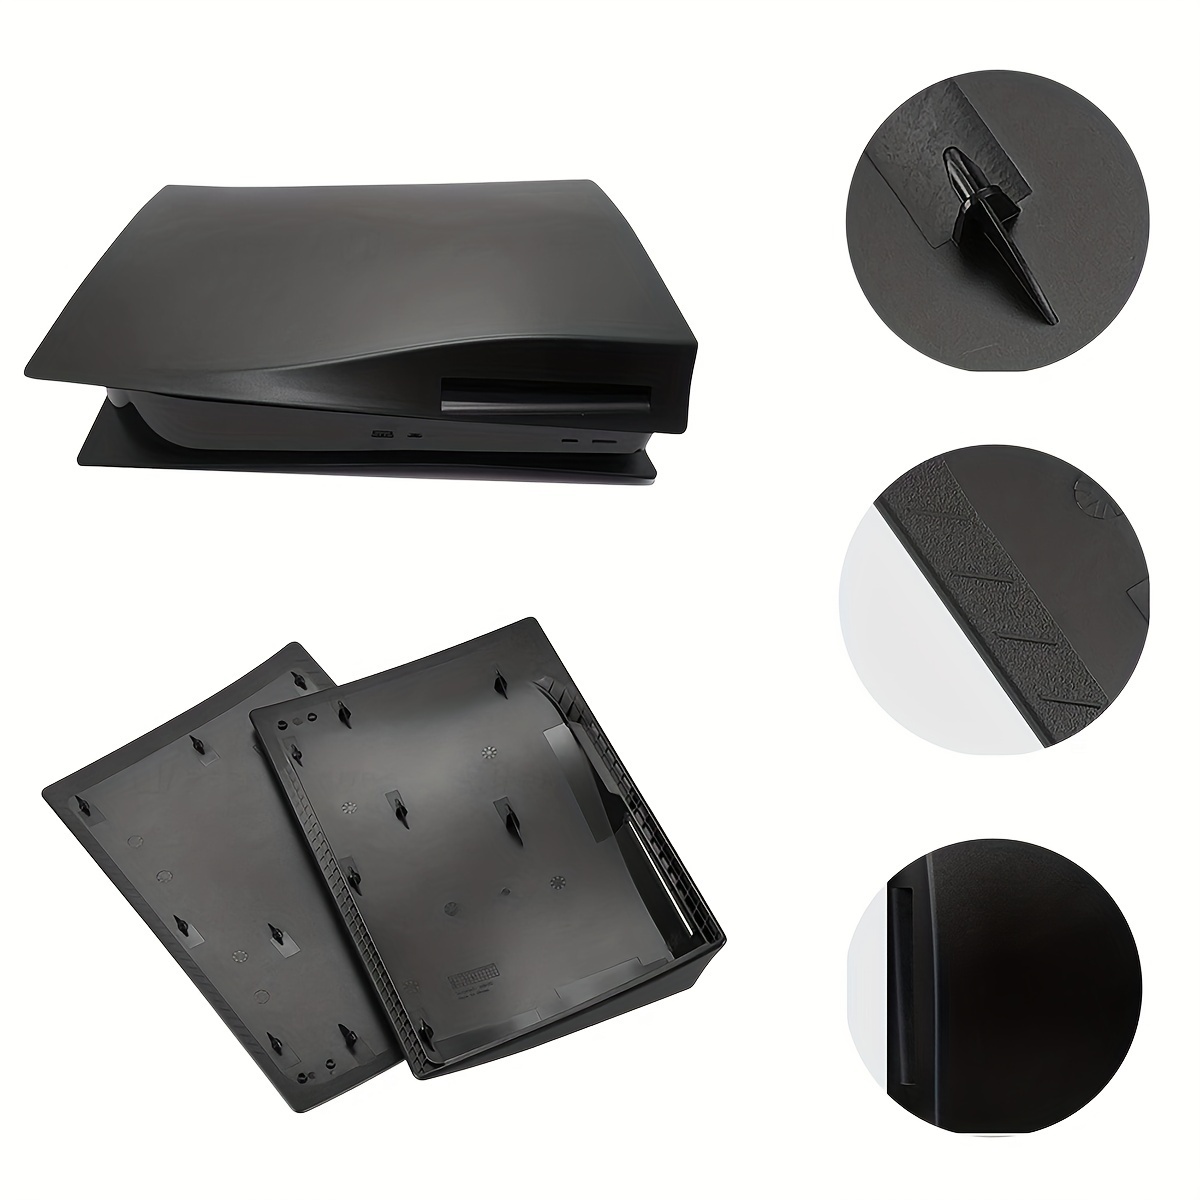 Accessories - Carcasa protectora para Playstation 5, de ABS, antiarañazos,  a prueba de polvo, placa frontal de repuesto para consola PS5 (edición de